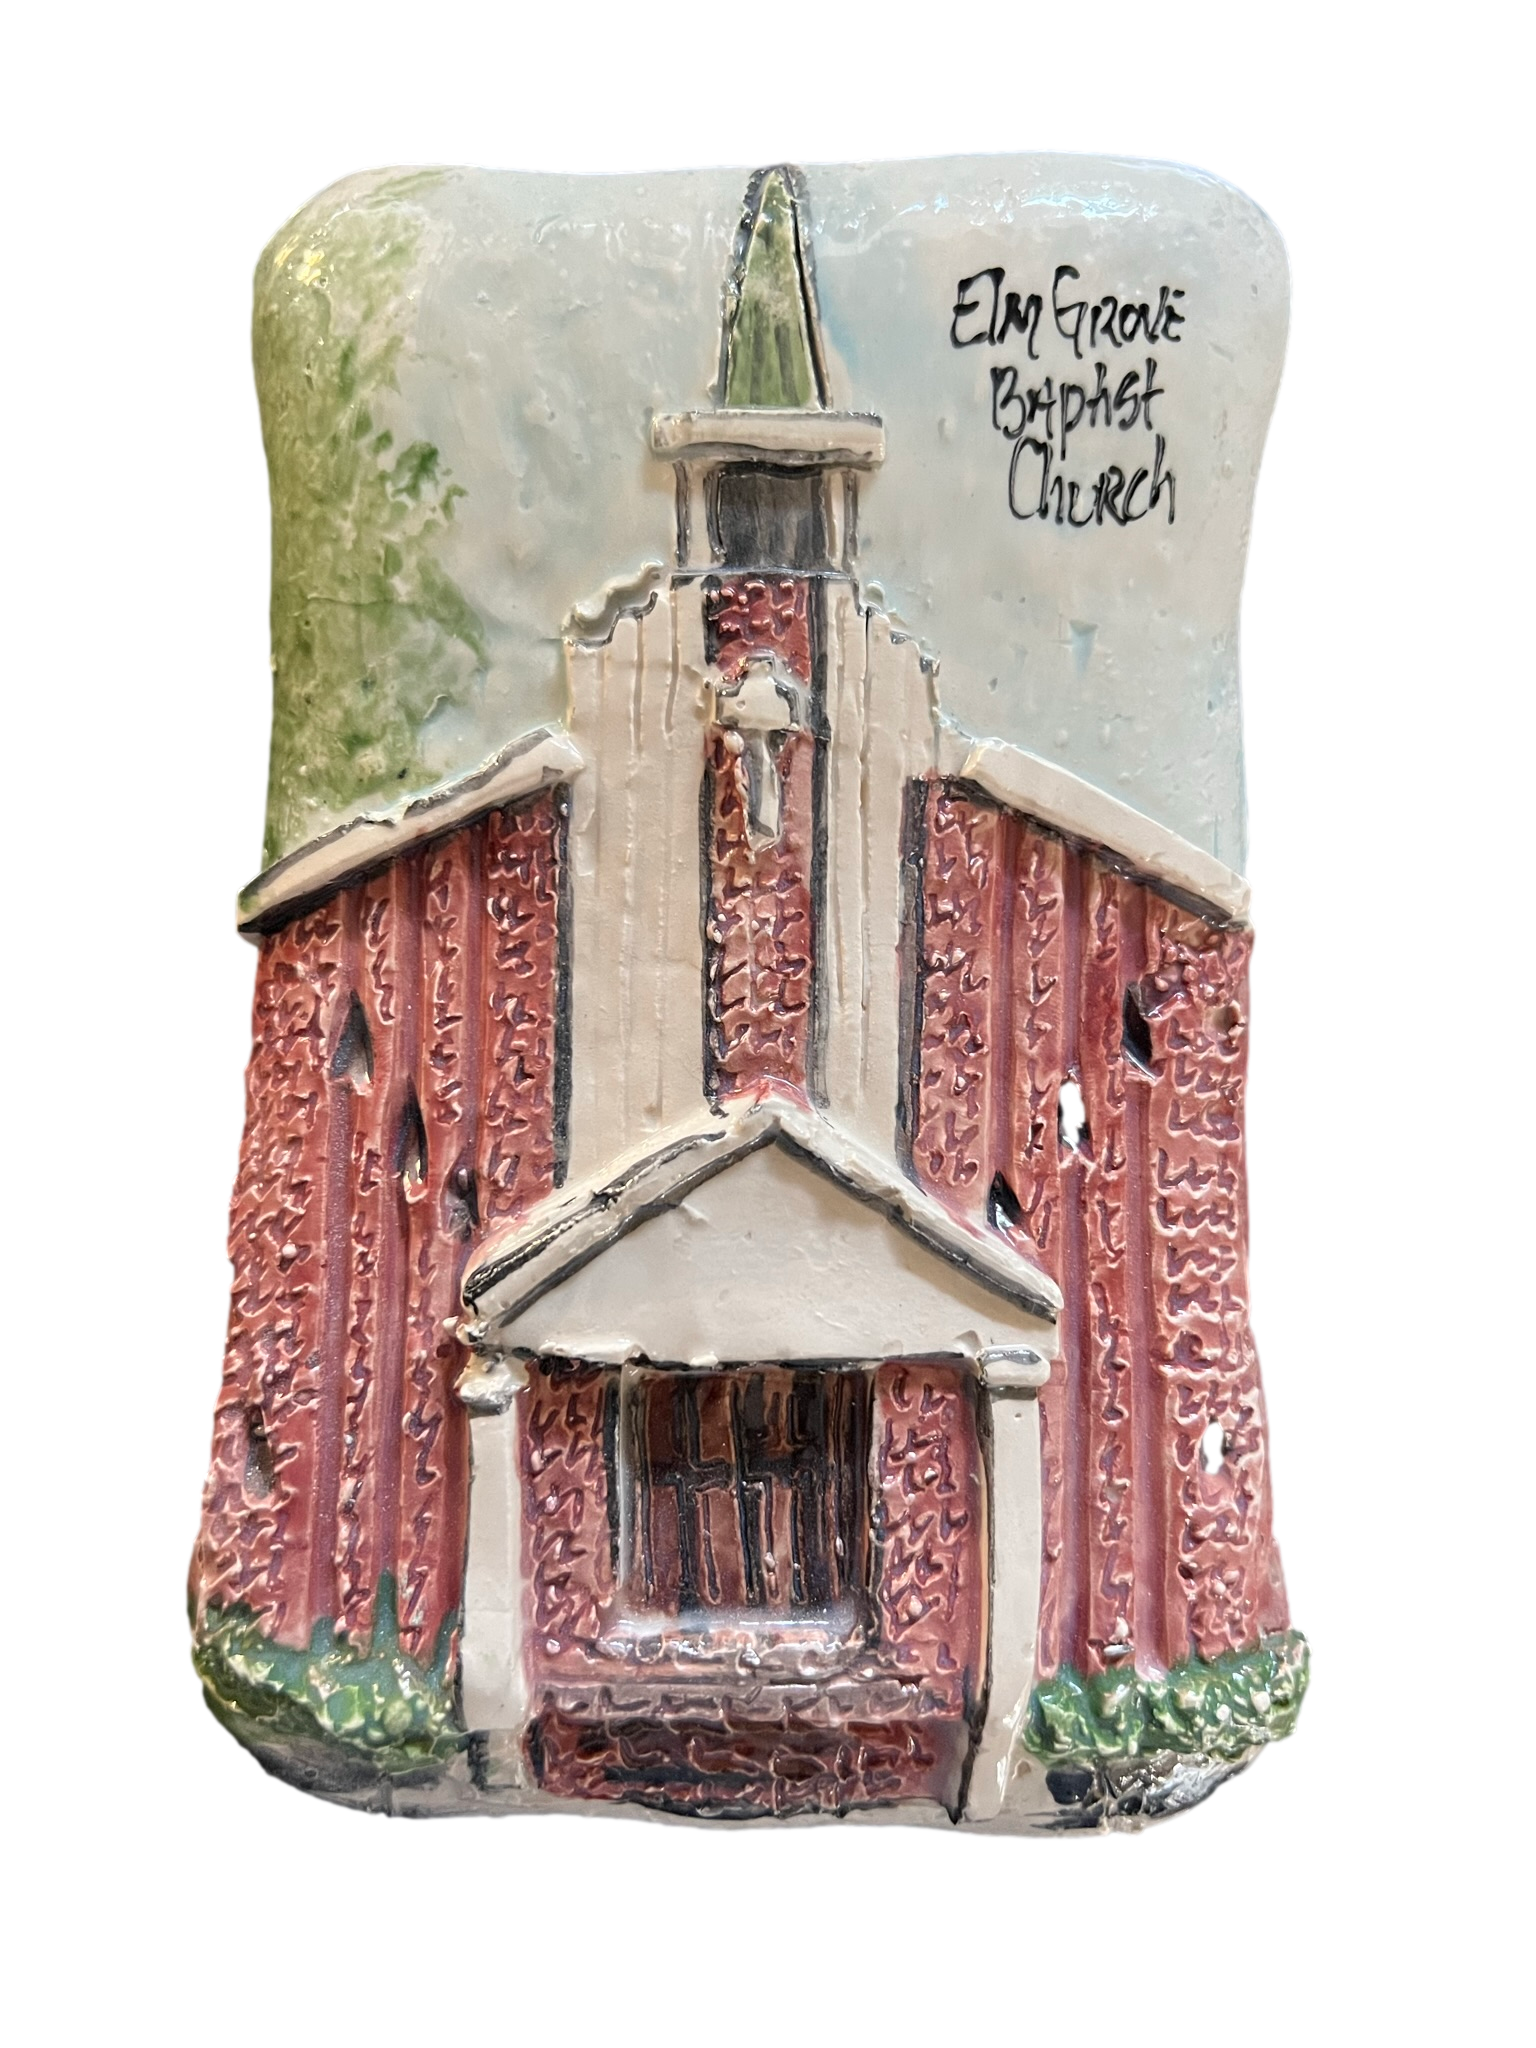 Elm Grove Baptist Church